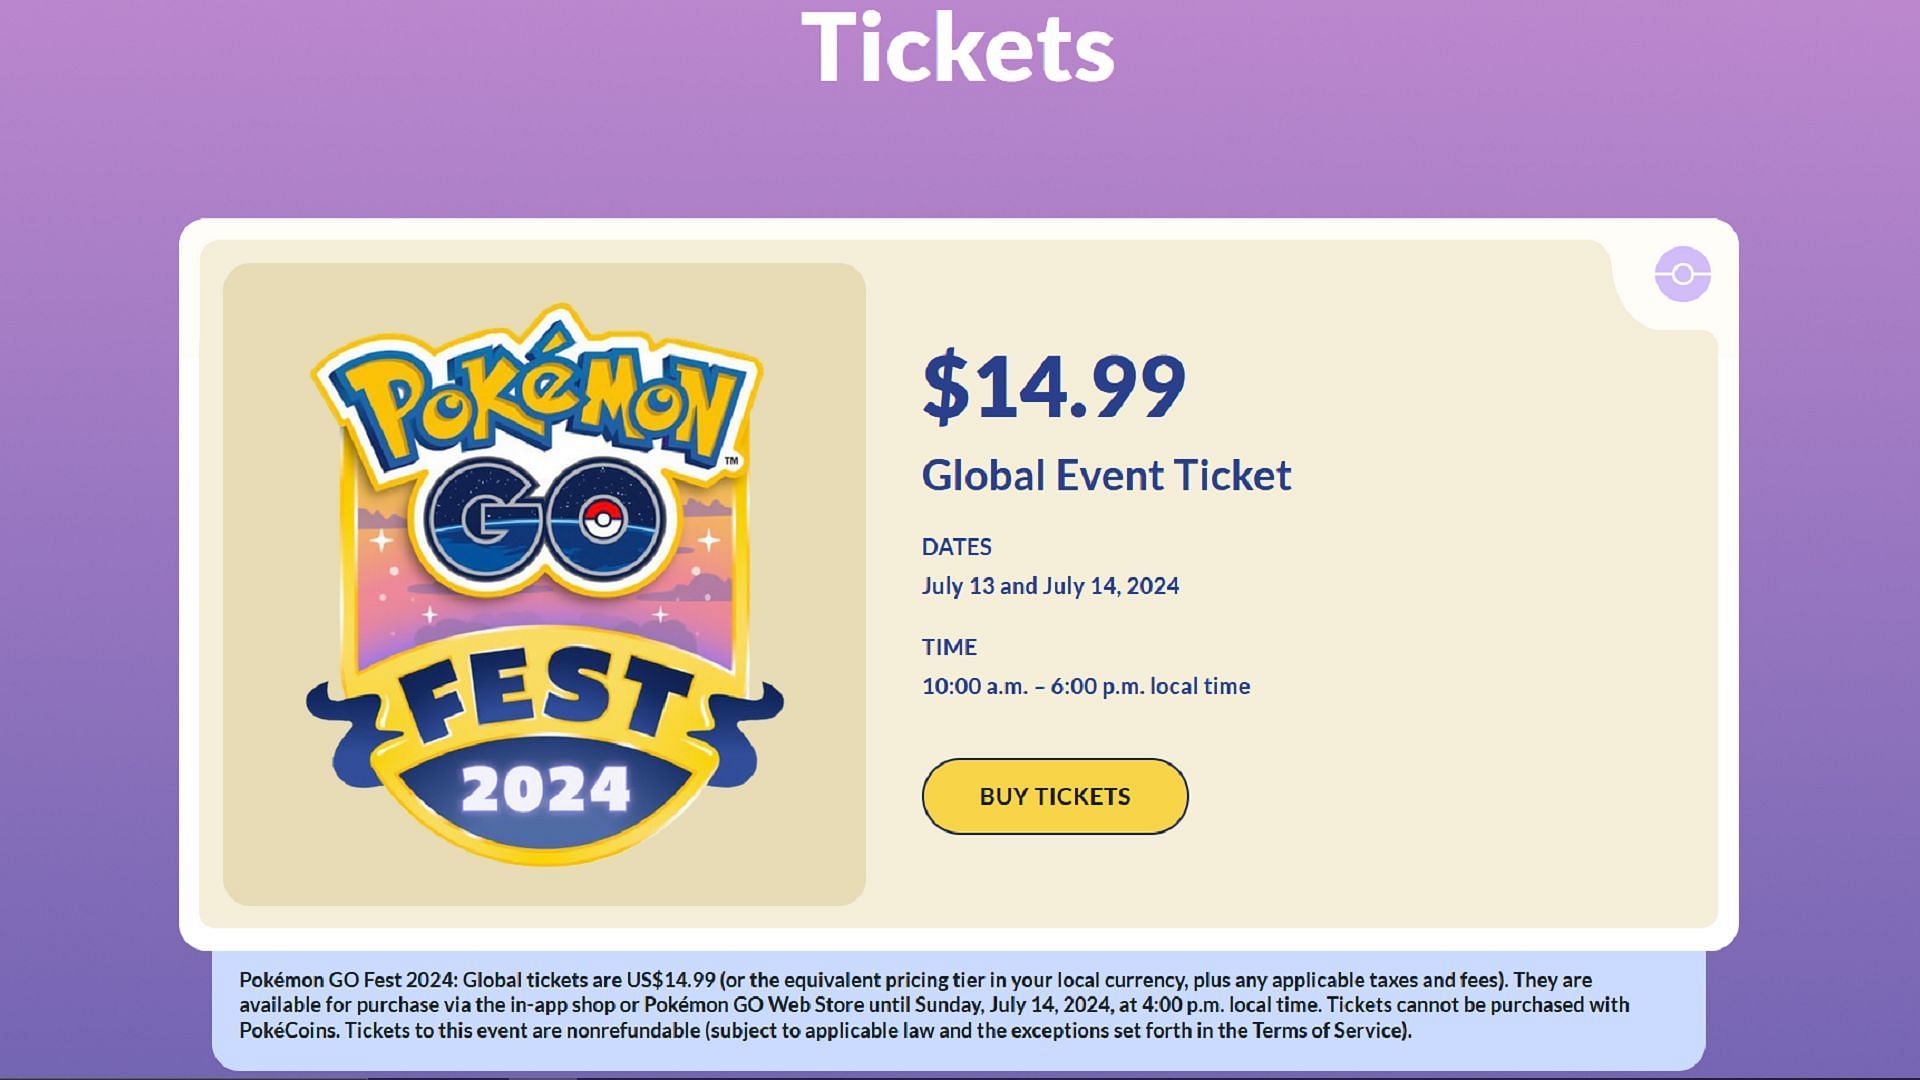 Is Pokemon GO Fest 2024 Global Ticket worth it?